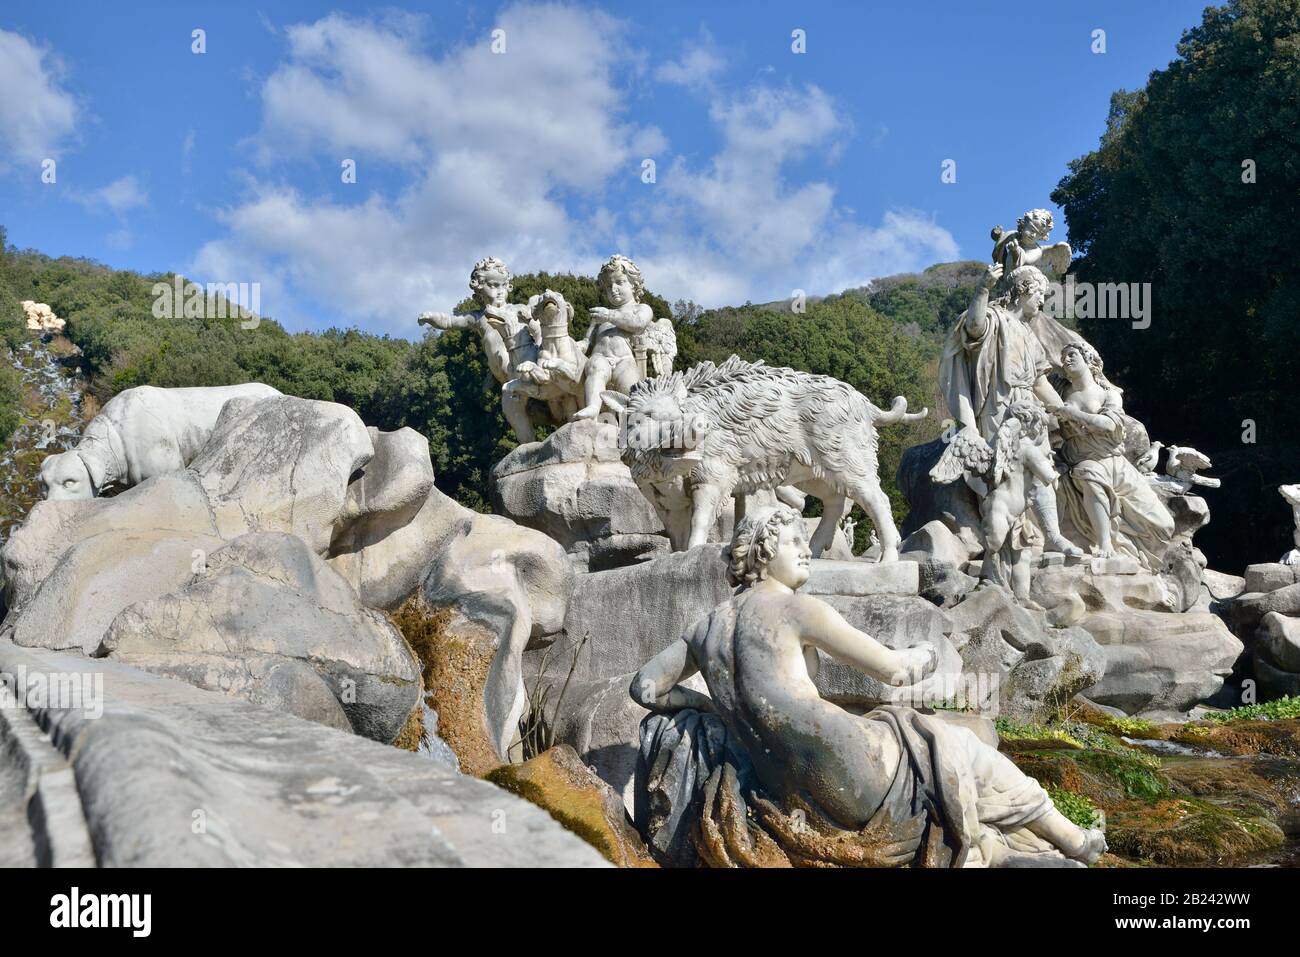 Reggia di Caserta (Venus and Adonis fountain - Fontana di Venere e Adone - Gaetano Salomone), UNESCO World Heritage Site - Campania, Italy, Europe Stock Photo